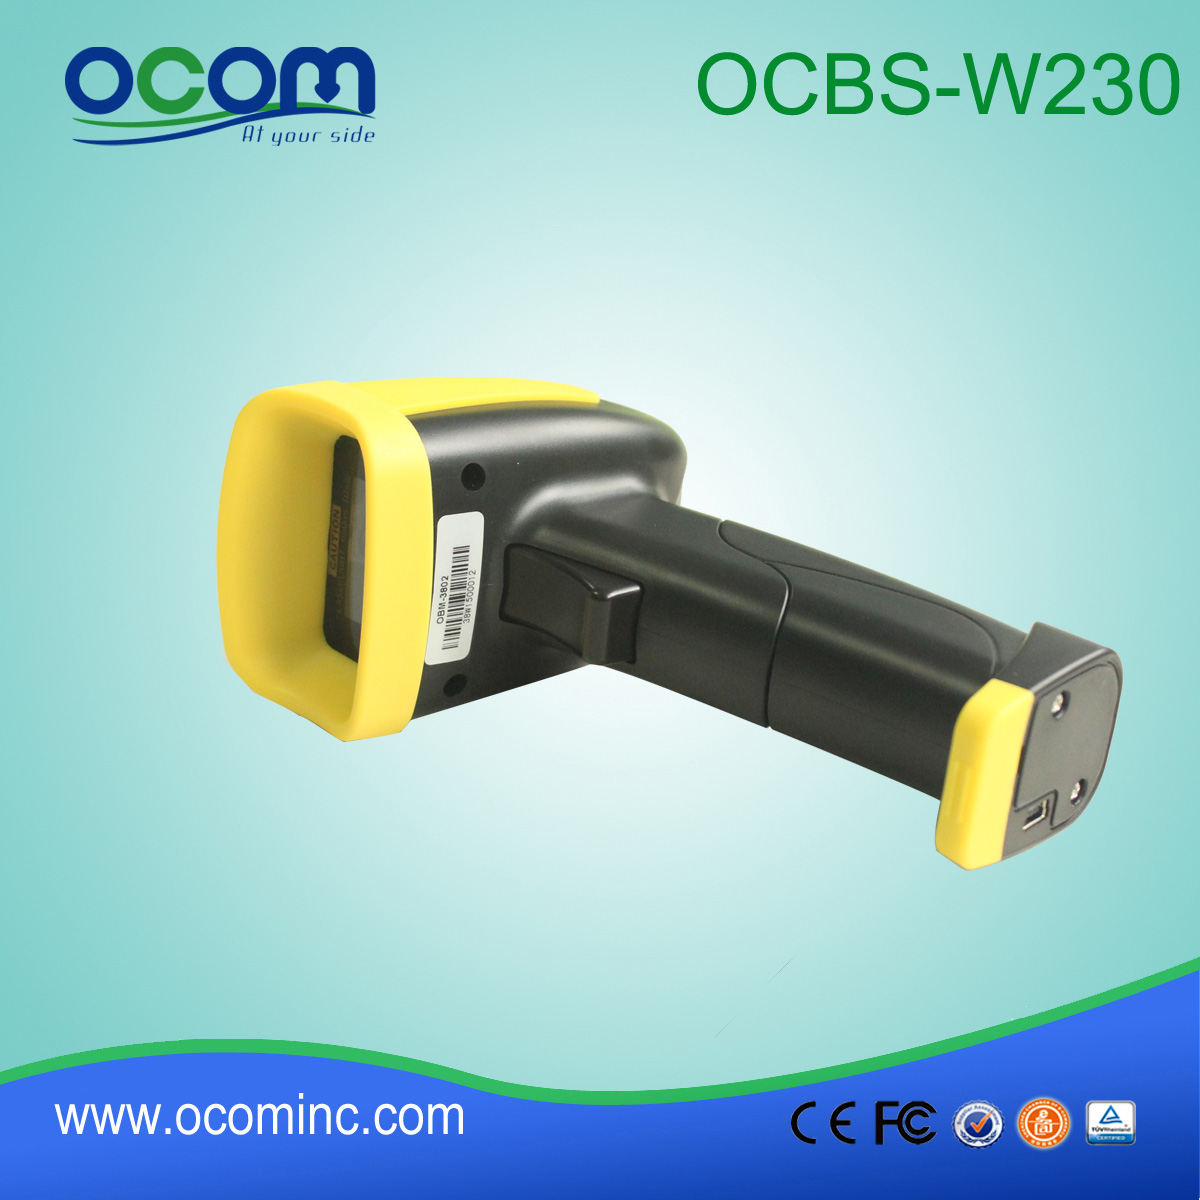 Modules Wireless Handheld Barcode Scanner laser OCBS-W230